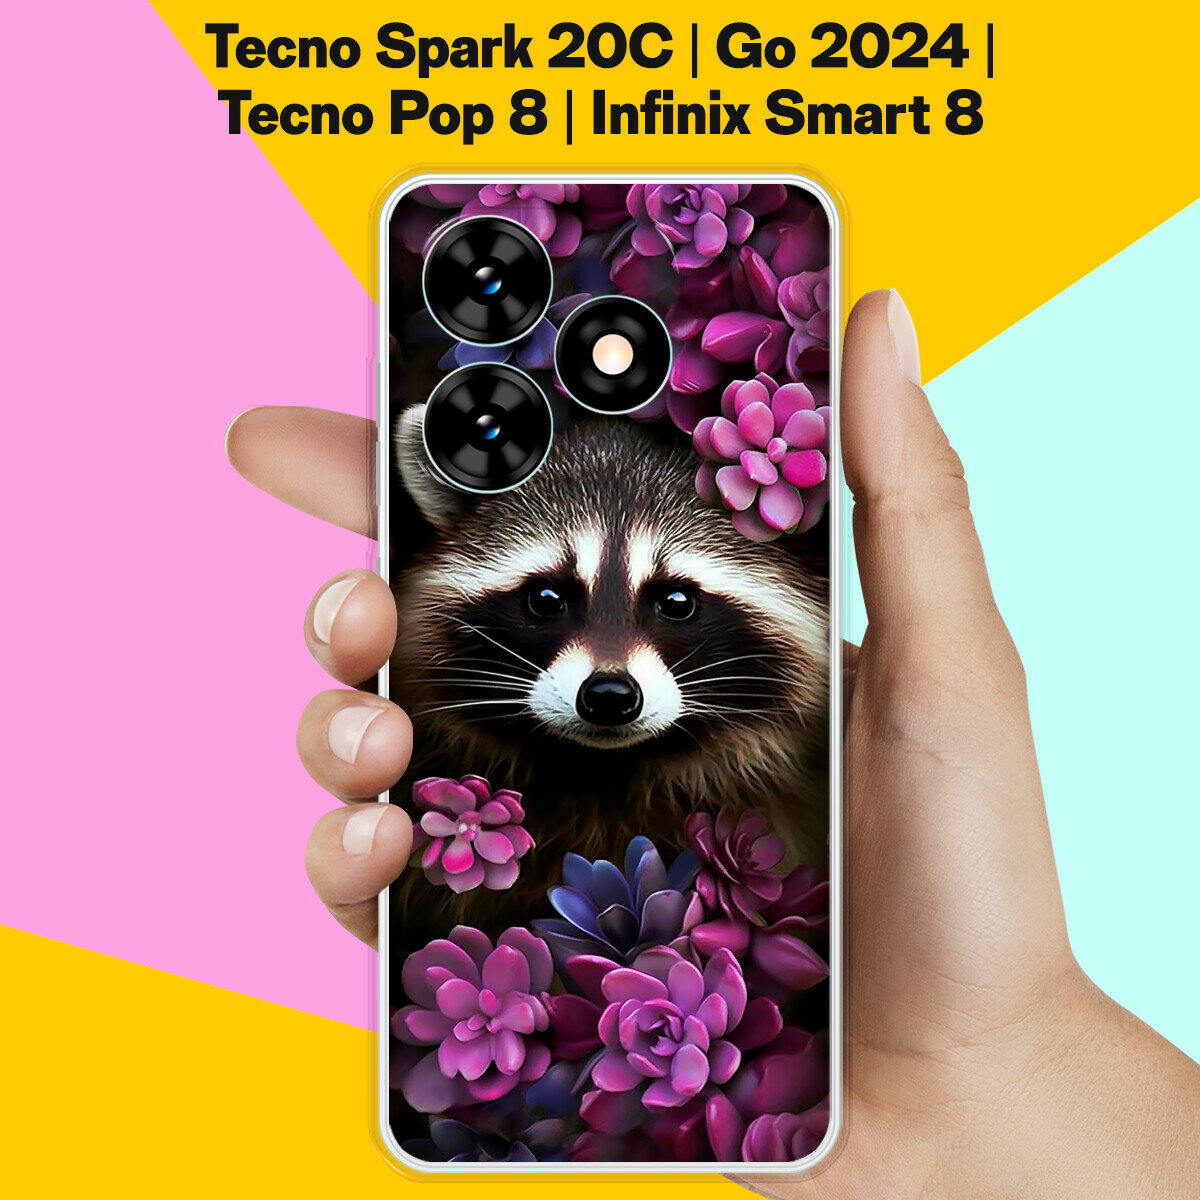 Силиконовый чехол на Tecno Spark Go 2024 / Tecno Spark 20C / Tecno Pop 8 / Infinix Smart 8 Енот / для Техно Спарк Го 2024 / Техно Спарк 20Ц / Техно Поп 8 / Инфиникс Смарт 8